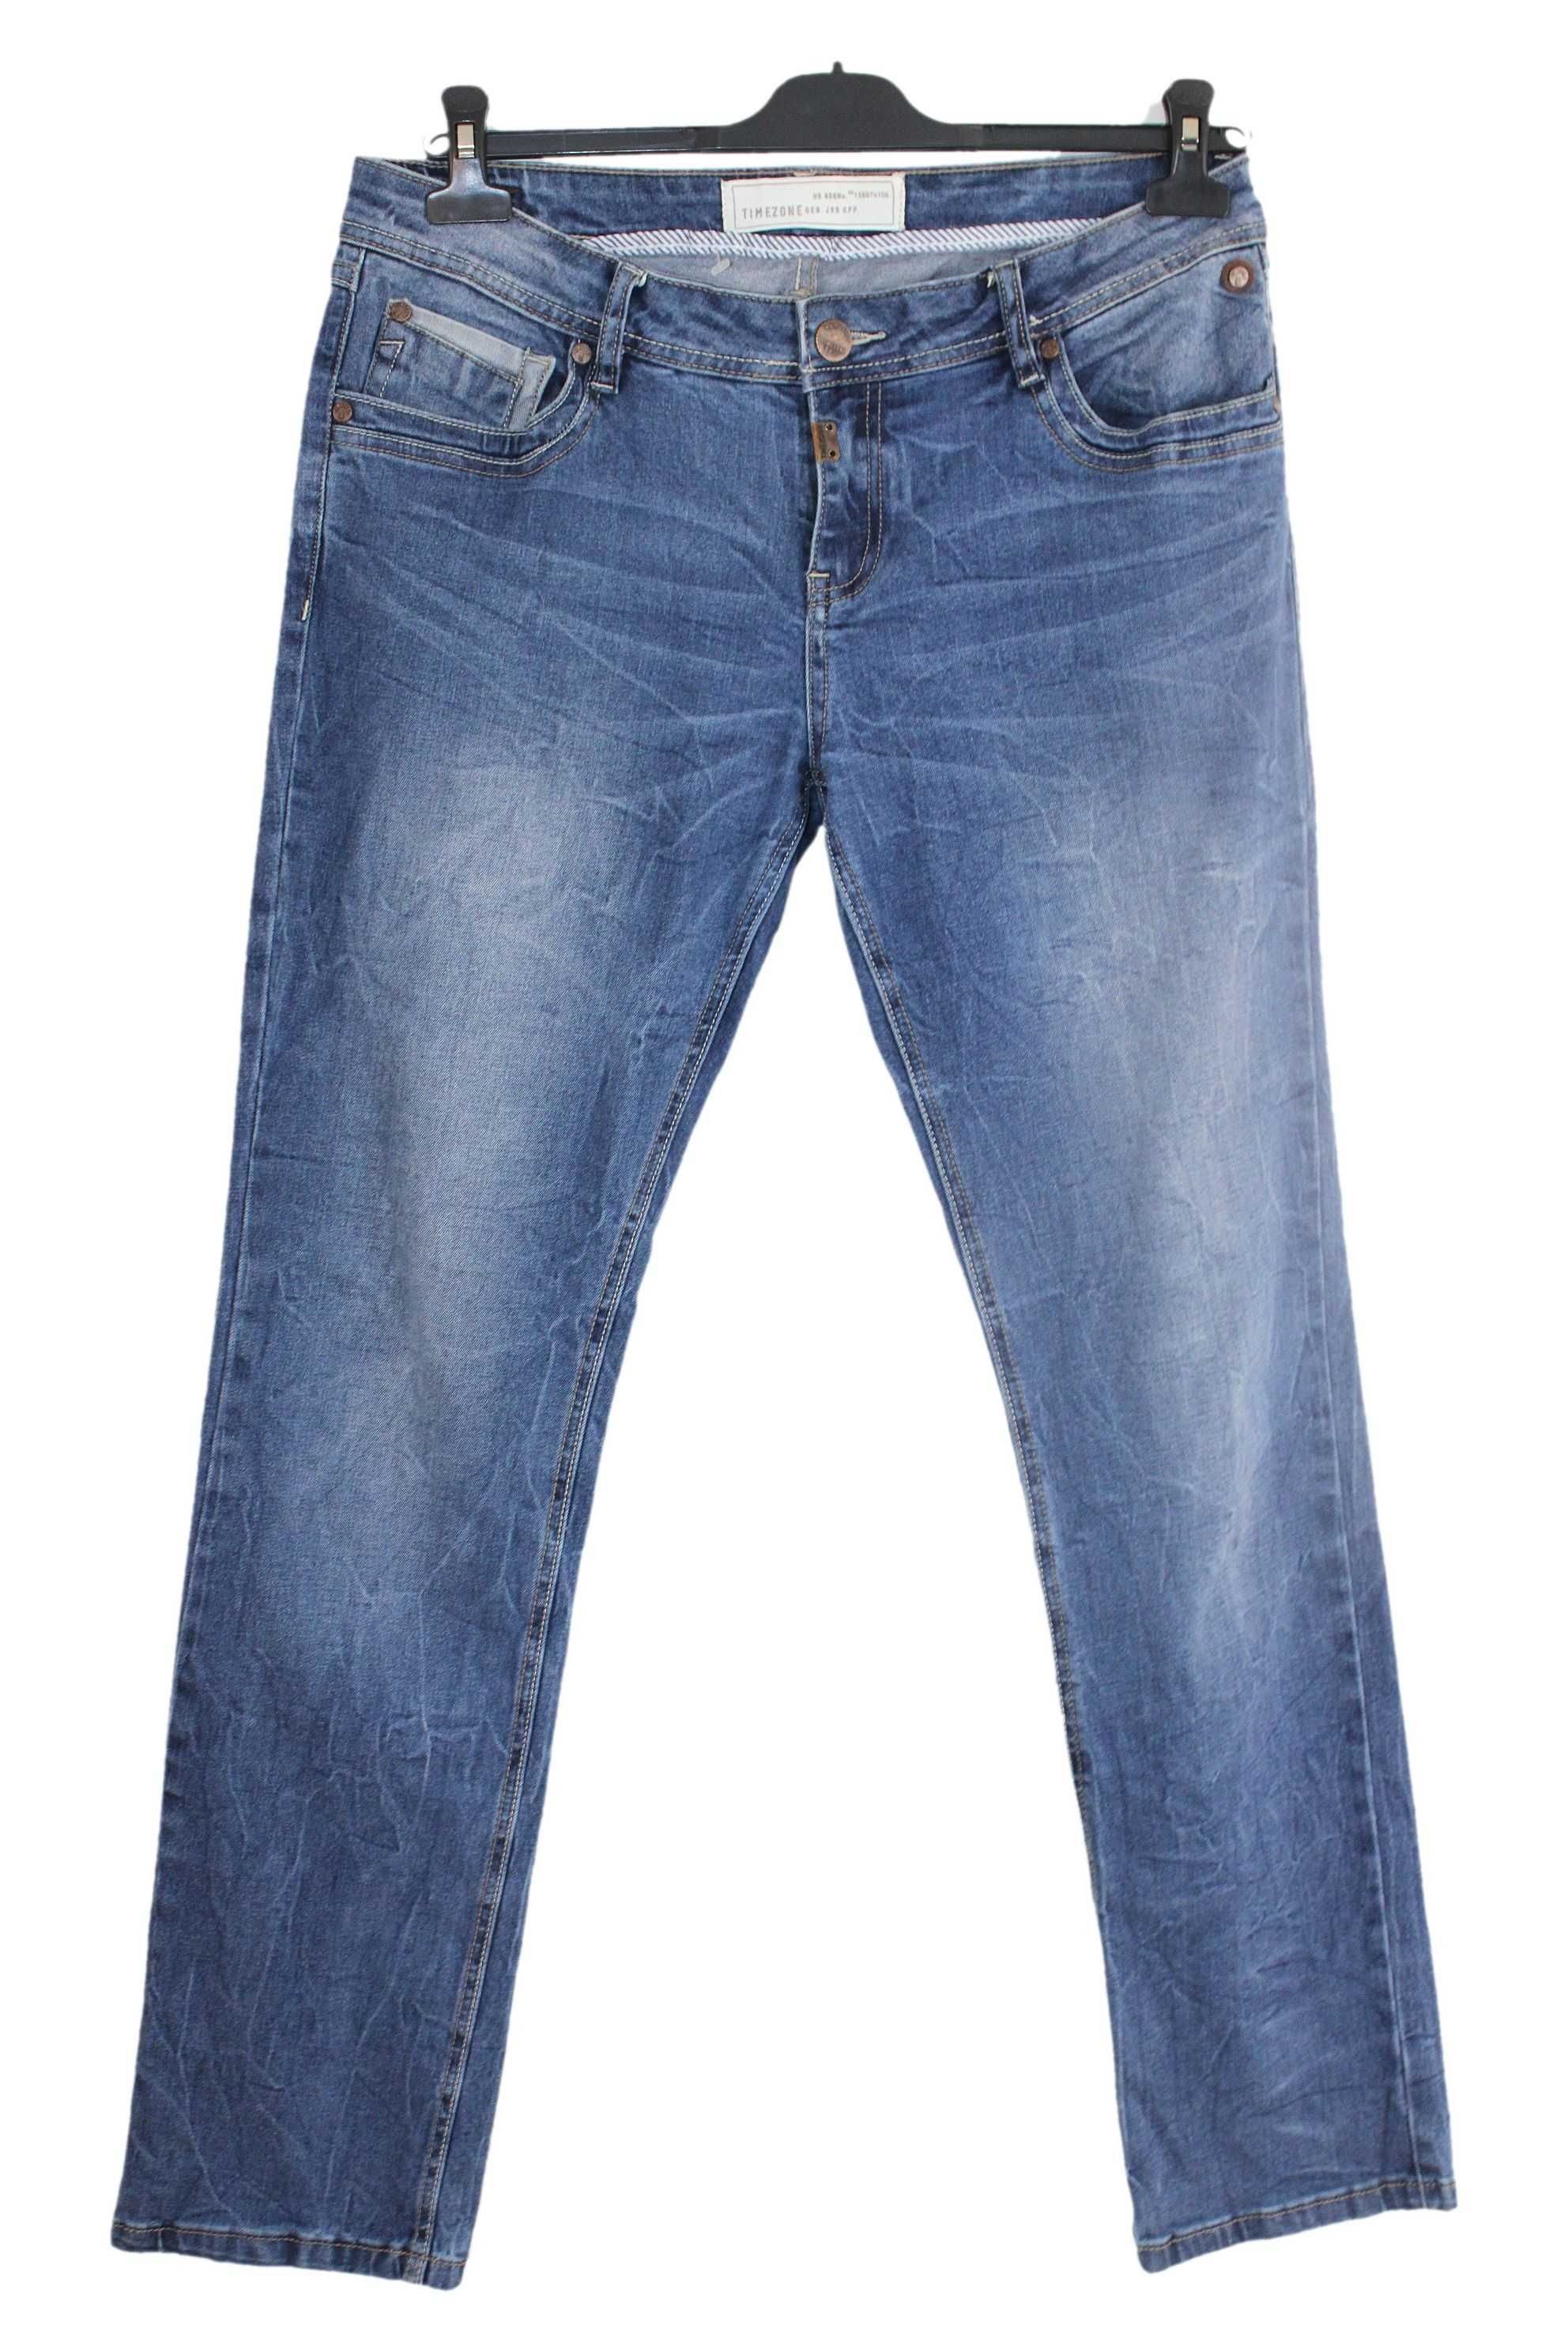 w8 TIMEZONE Stylowe Męskie Niebieskie Proste Spodnie Jeans L